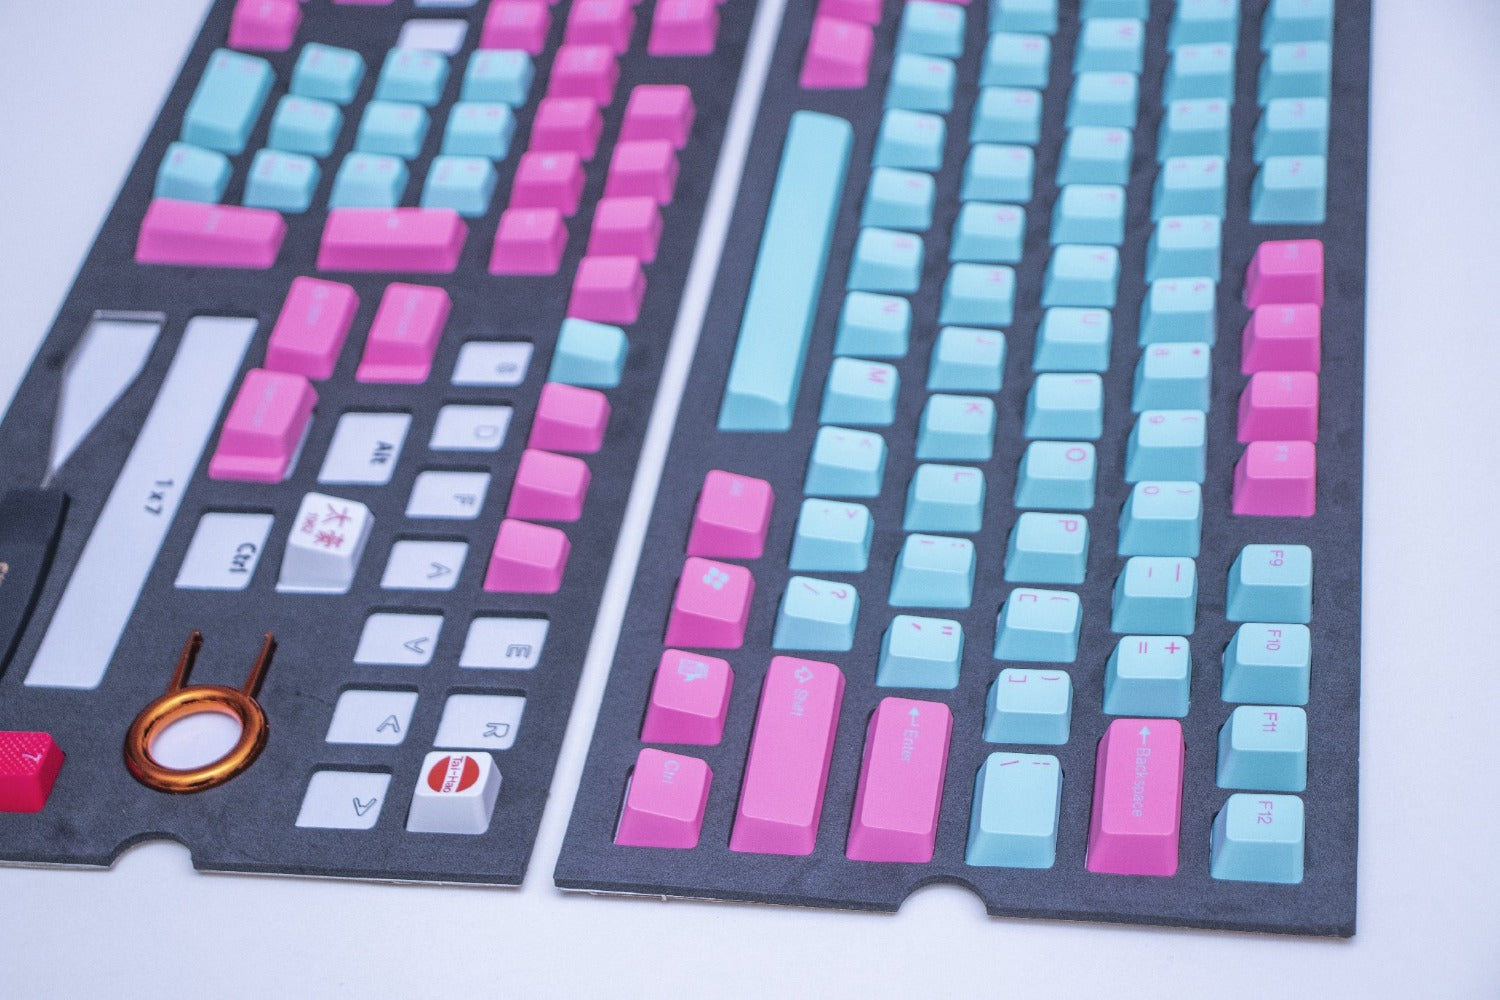 teclado-turquesa-rosado-teclado-gamer_Fancy_customs